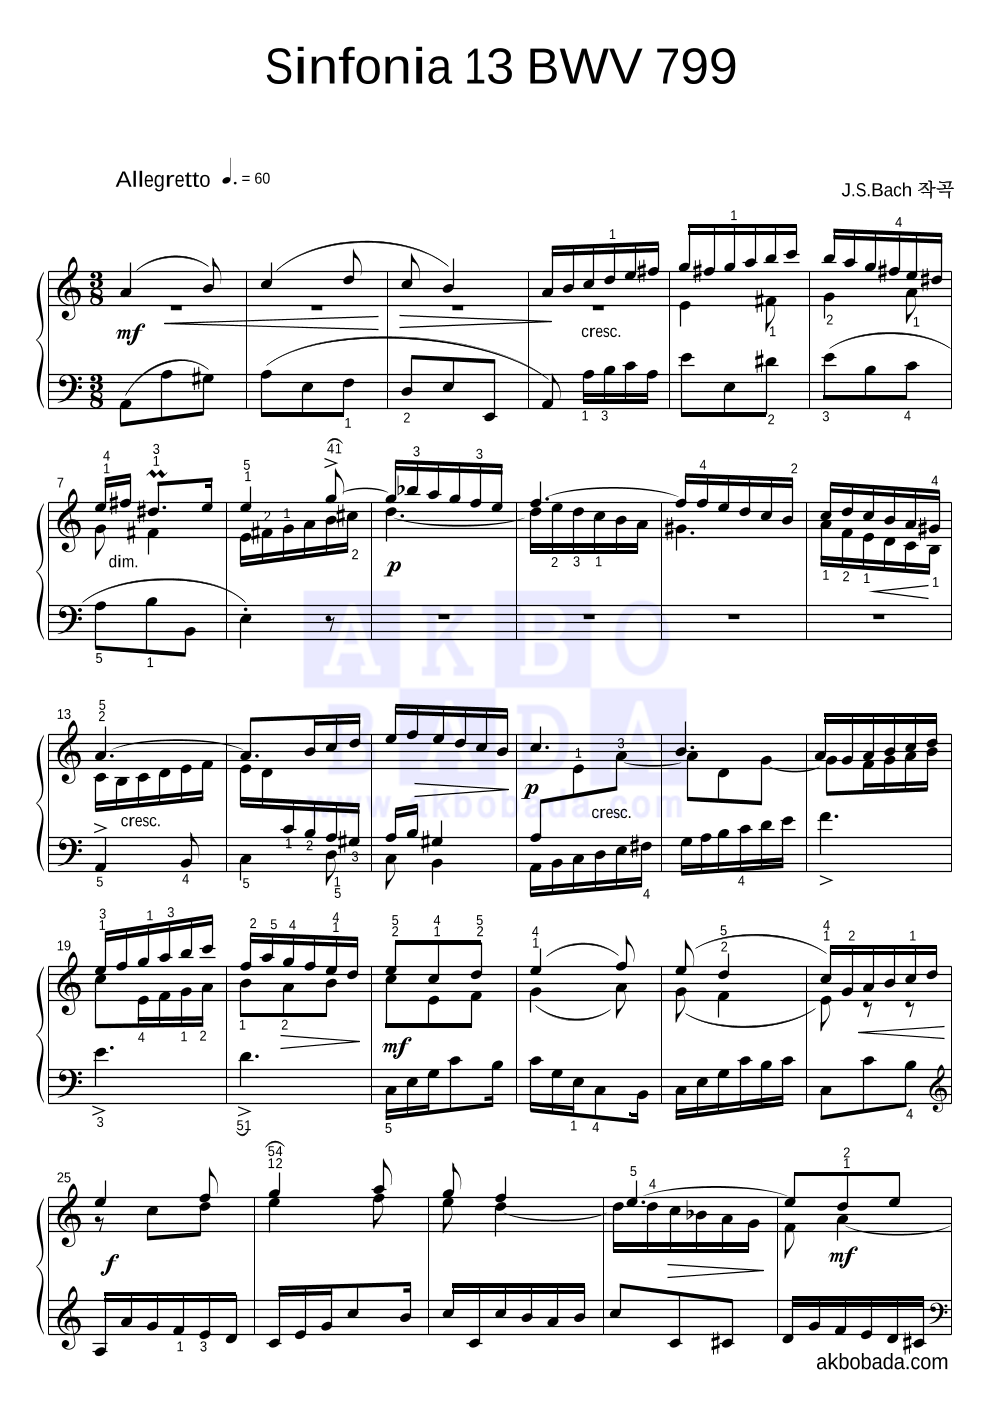 바흐 - Sinfonia 13 BWV 799 피아노 2단 악보 